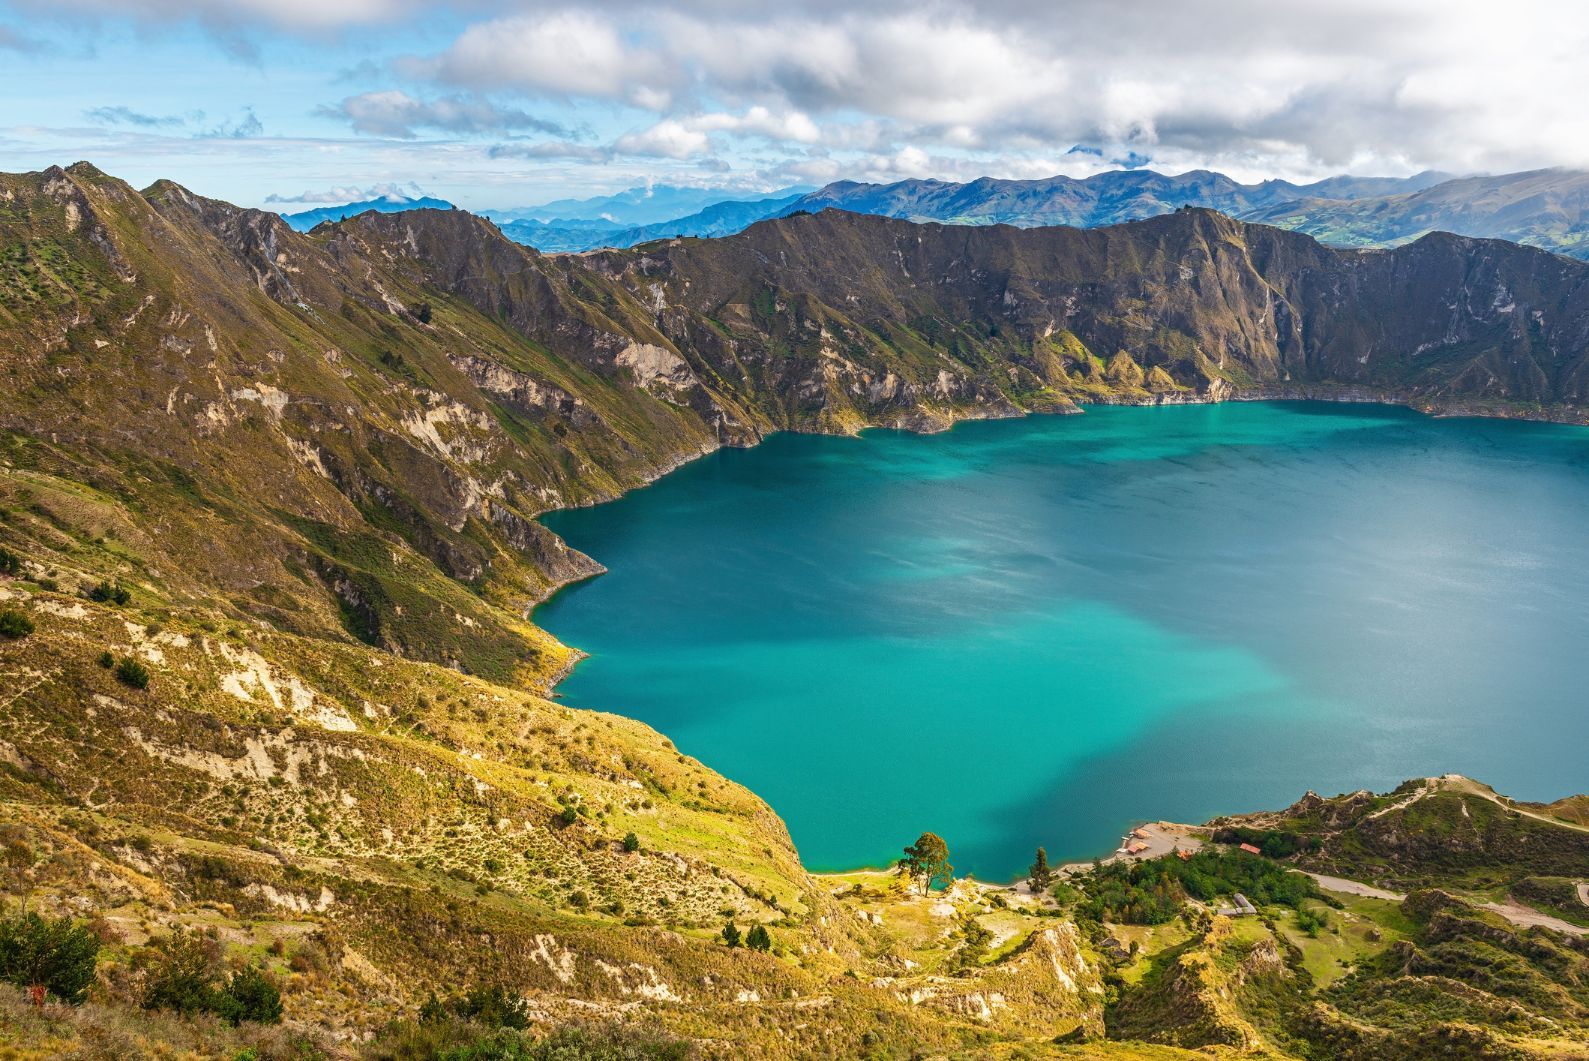 The volcanic turquoise crater lagoon of Quilotoa, Quito region, Ecuador.